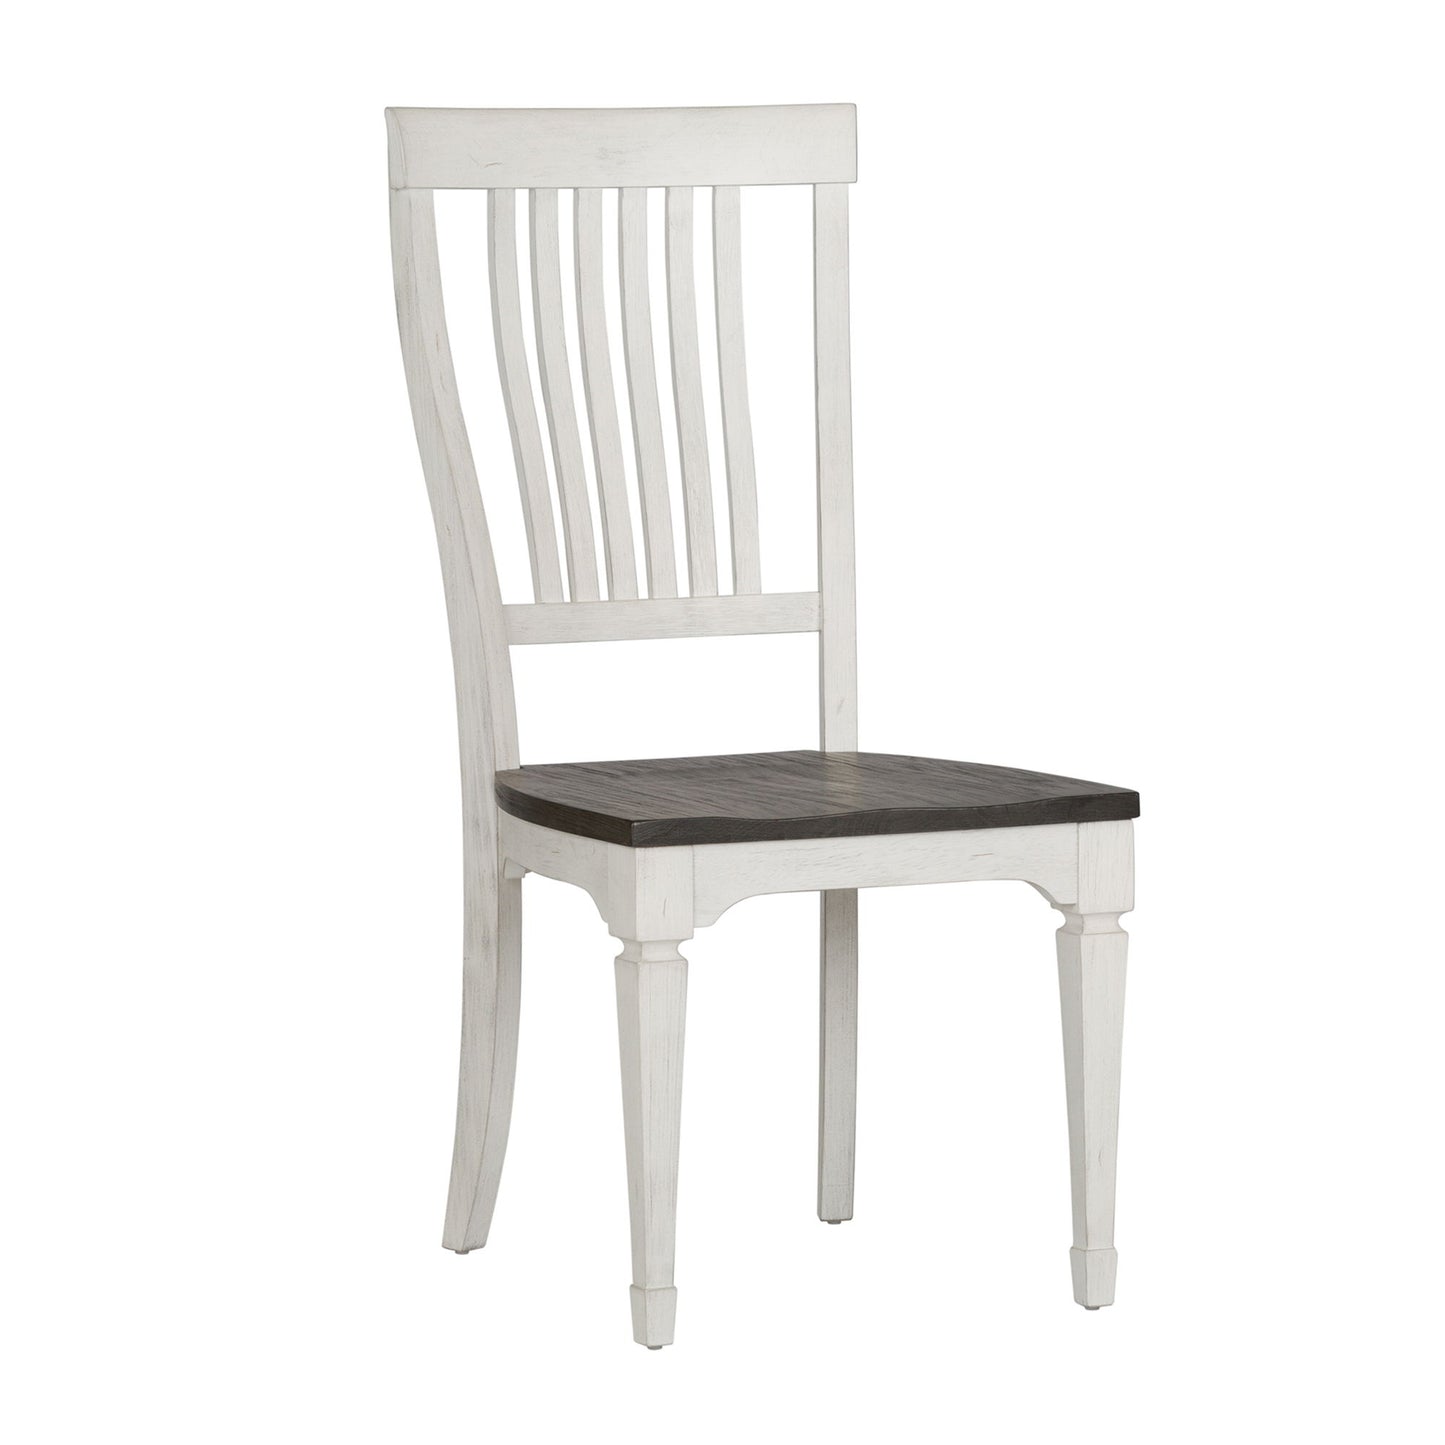 Allyson Park - Slat Back Side Chair - White